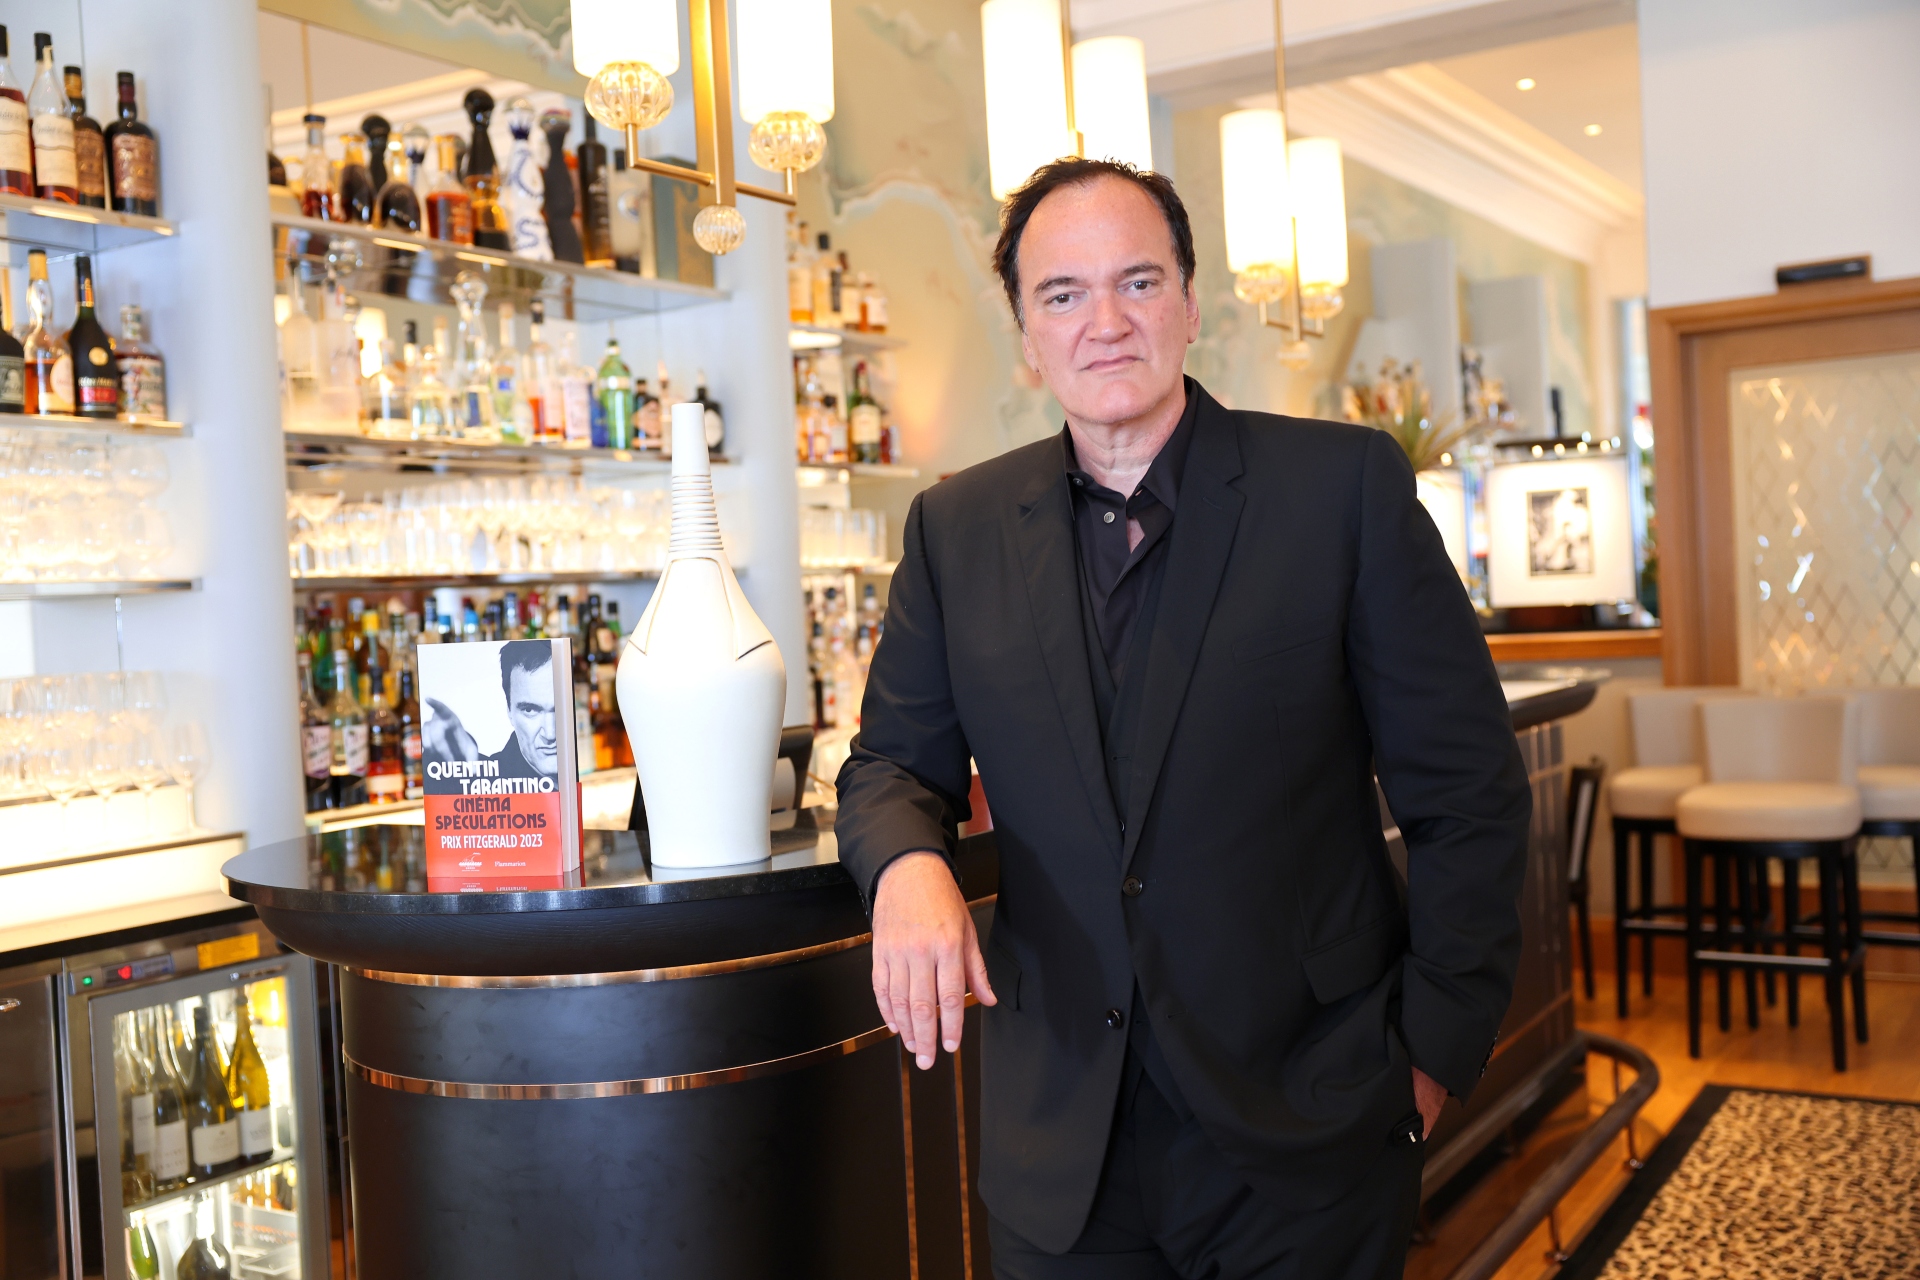 Actores que revivieron sus carreras gracias a Quentin Tarantino